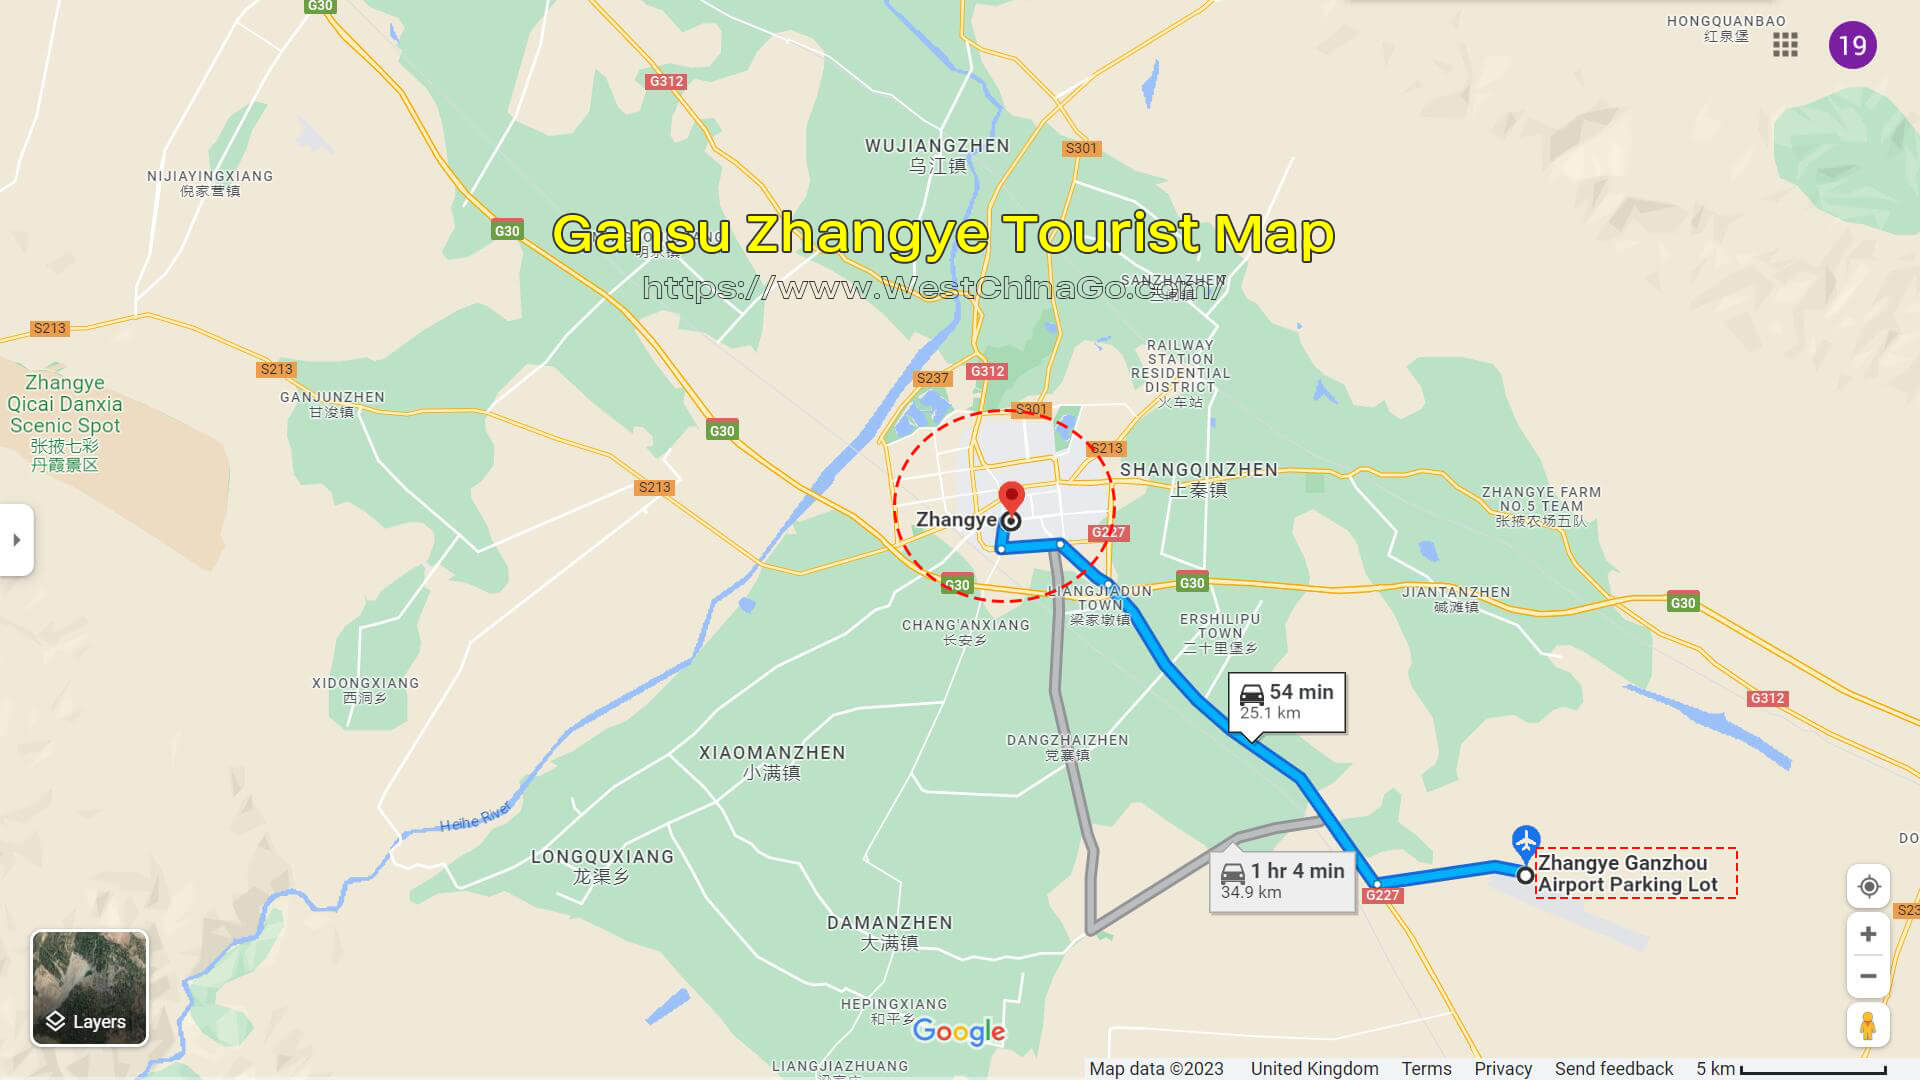 Zhangye Airport Transfer